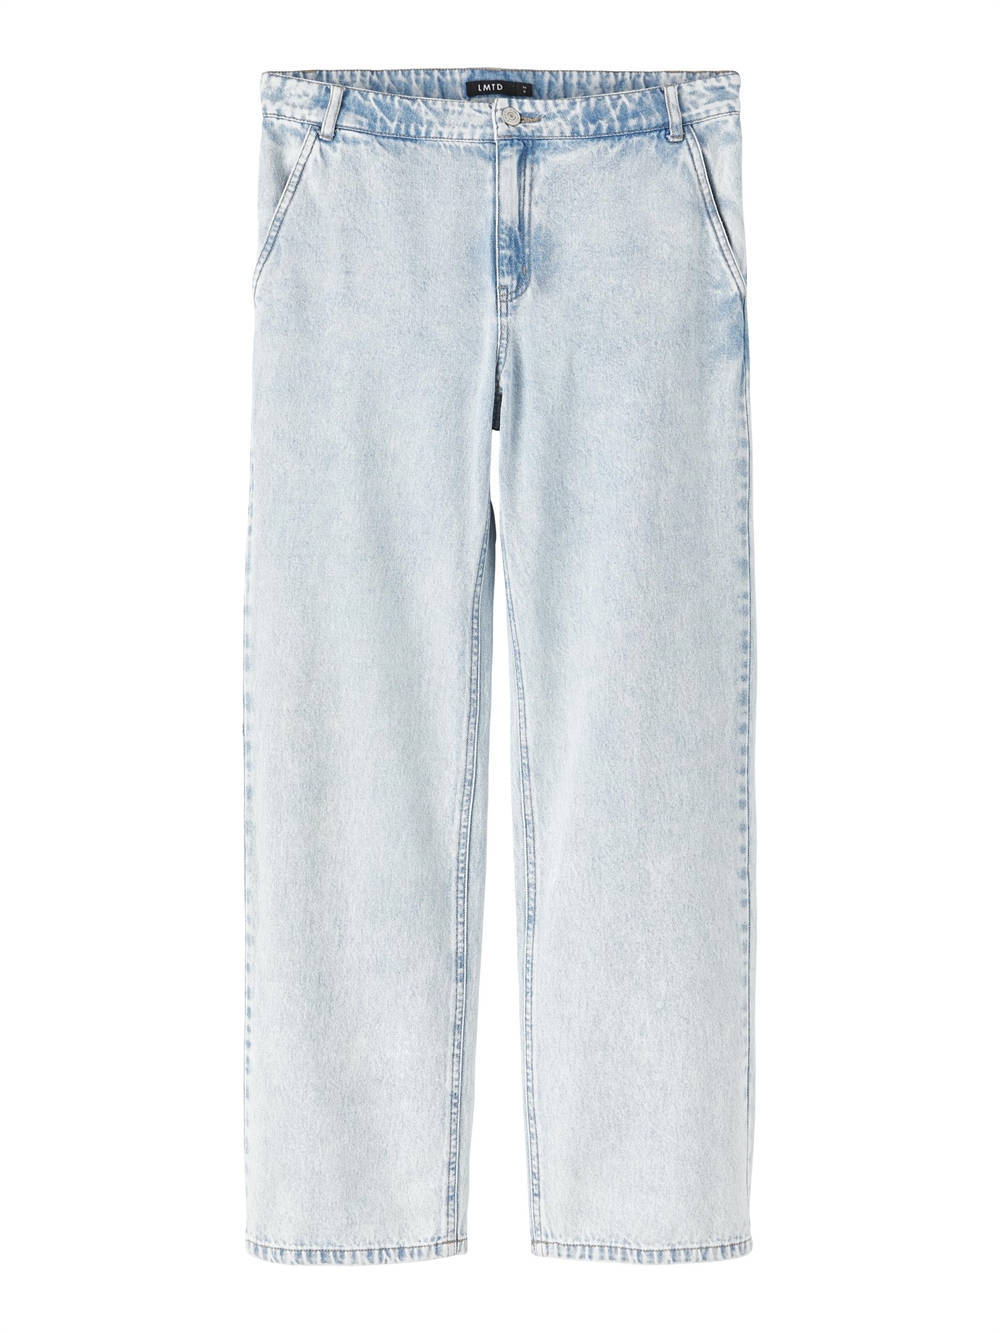 overvælde stål Fremtrædende Køb disse smarte baggy pants der garanterer et cool look og  bevægelsesfrihed.